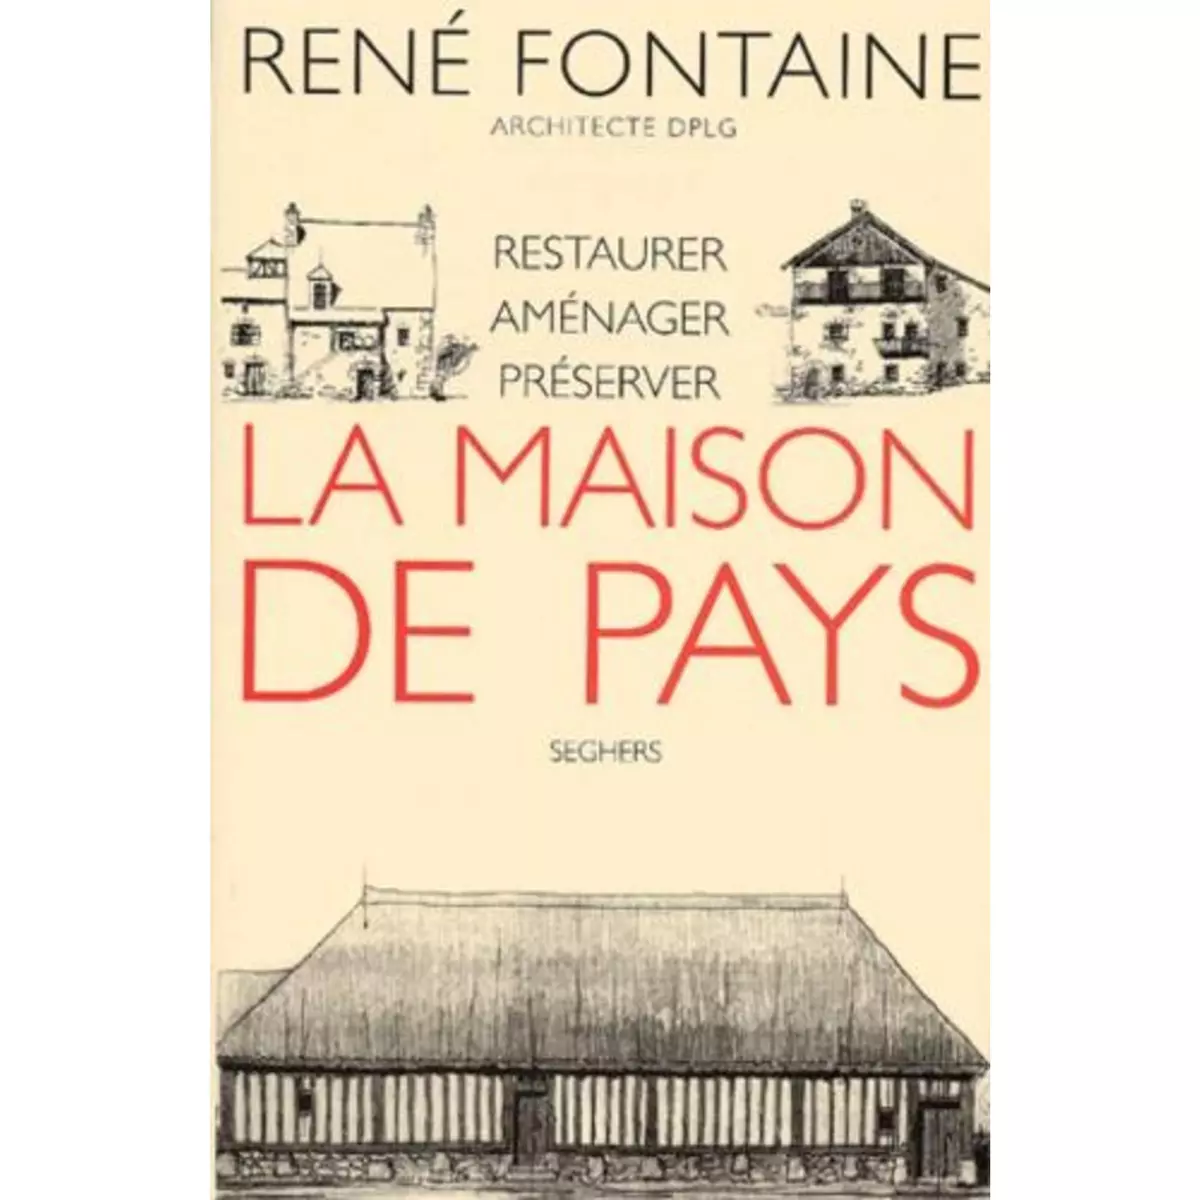  LA MAISON DE PAYS. RESTAURER, AMENAGER, PRESERVER, Fontaine René